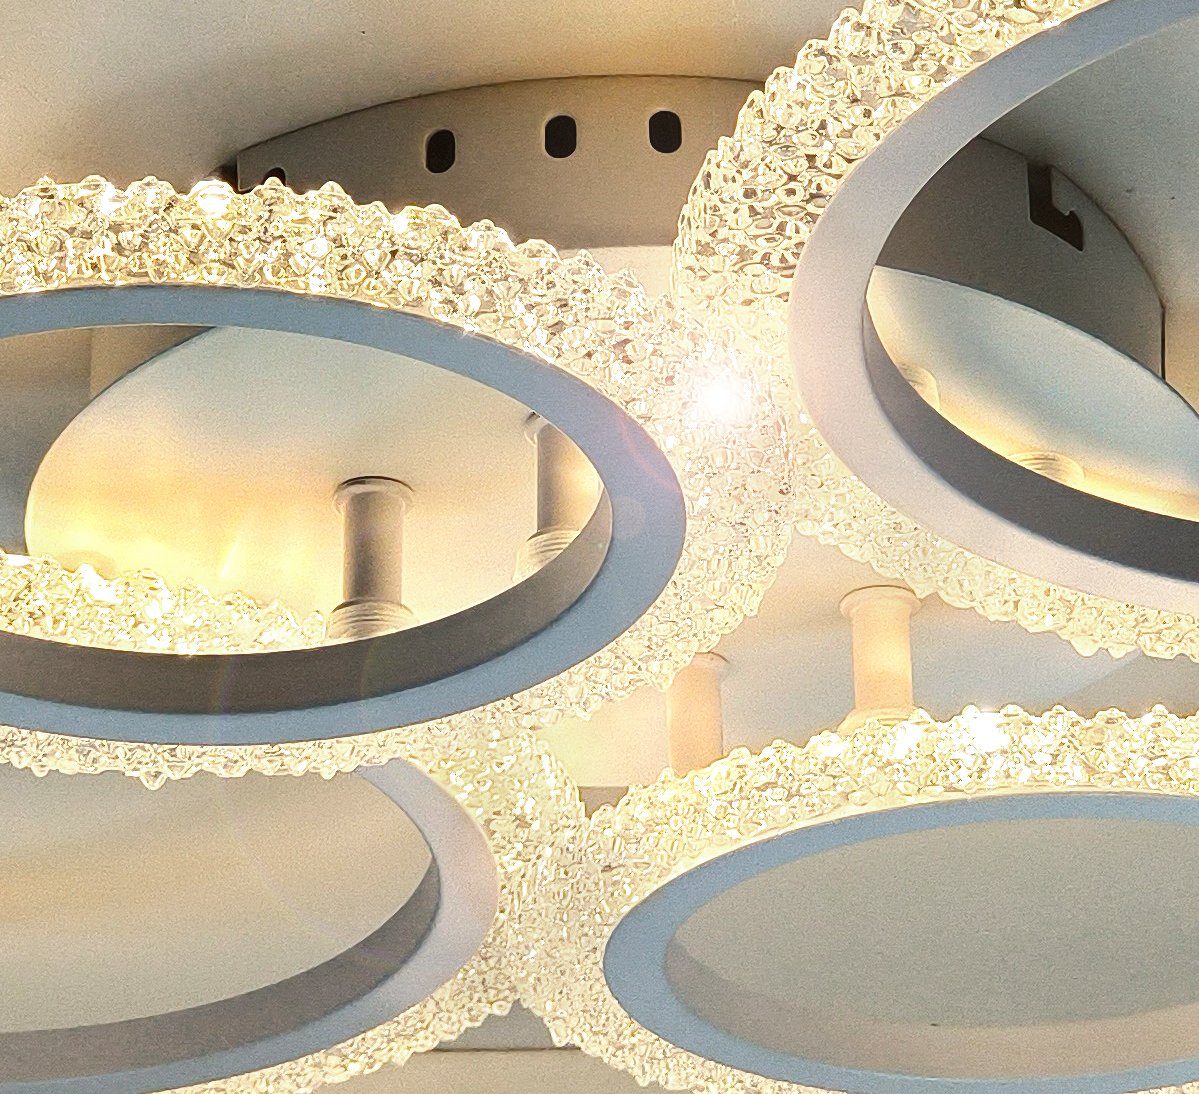 4 einstellbar, XL-XXL Fernbedienung, Ringe werden gespeichert, 11-45W, groß / Weiß, funkelnd Lewima Warmweiß Einstellungen Neutralweiß 60x41cm per Farbwechsel / LED glitzernd Deckenleuchte Deckenlampe Dimmbar Kaltweiß